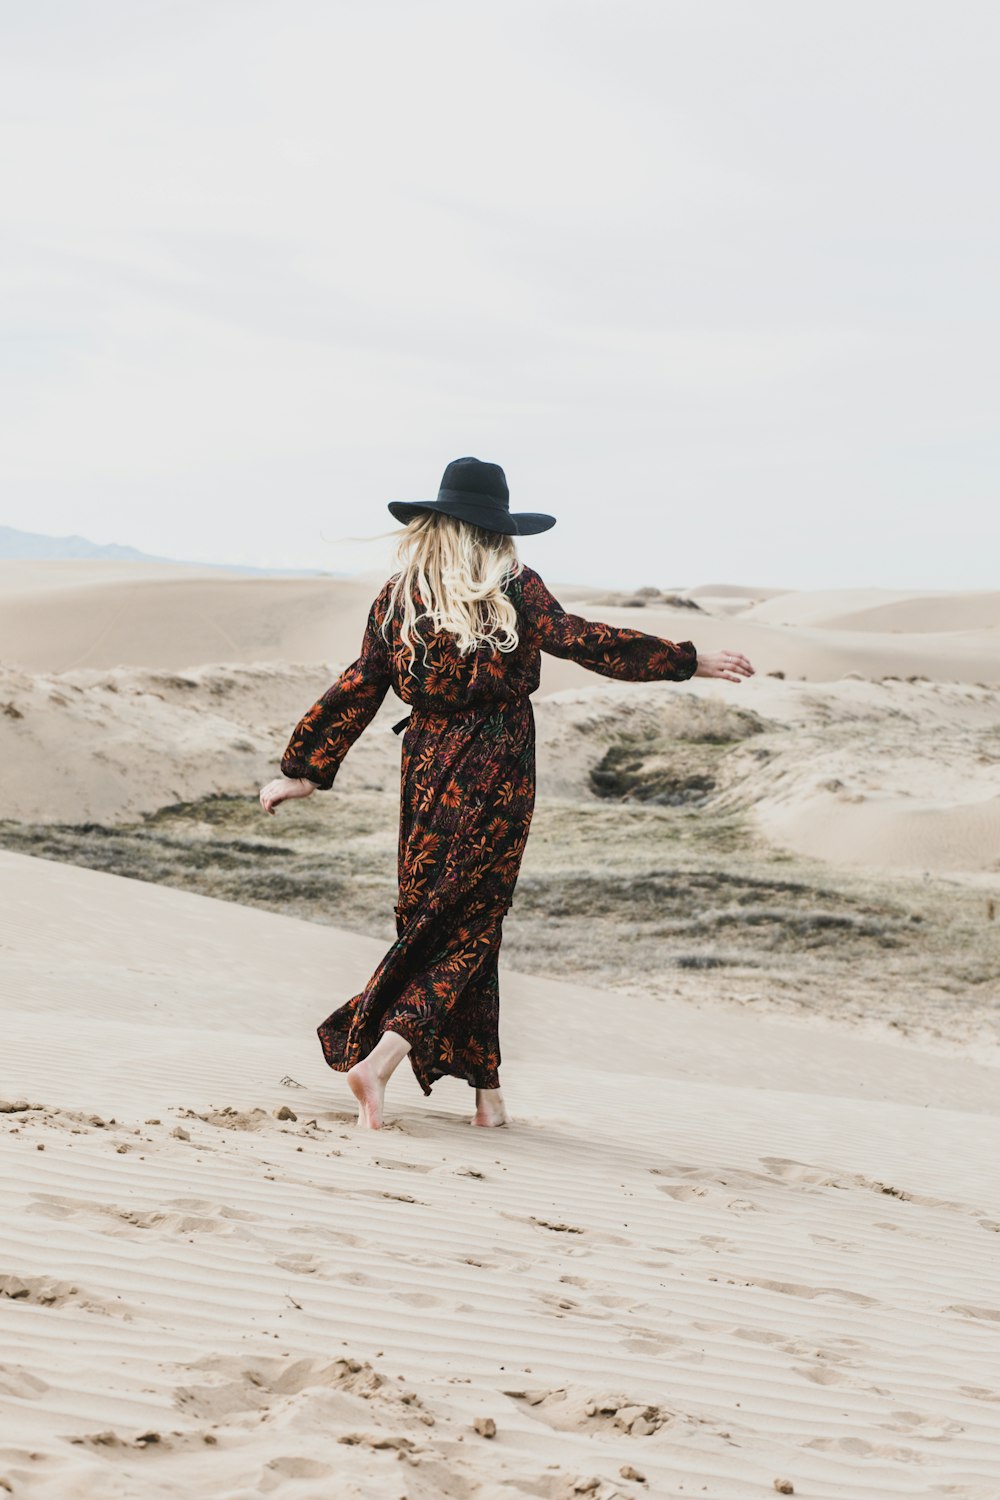 foto de pessoa vestindo maxi vestido floral marrom e laranja andando descalça por terra deserta